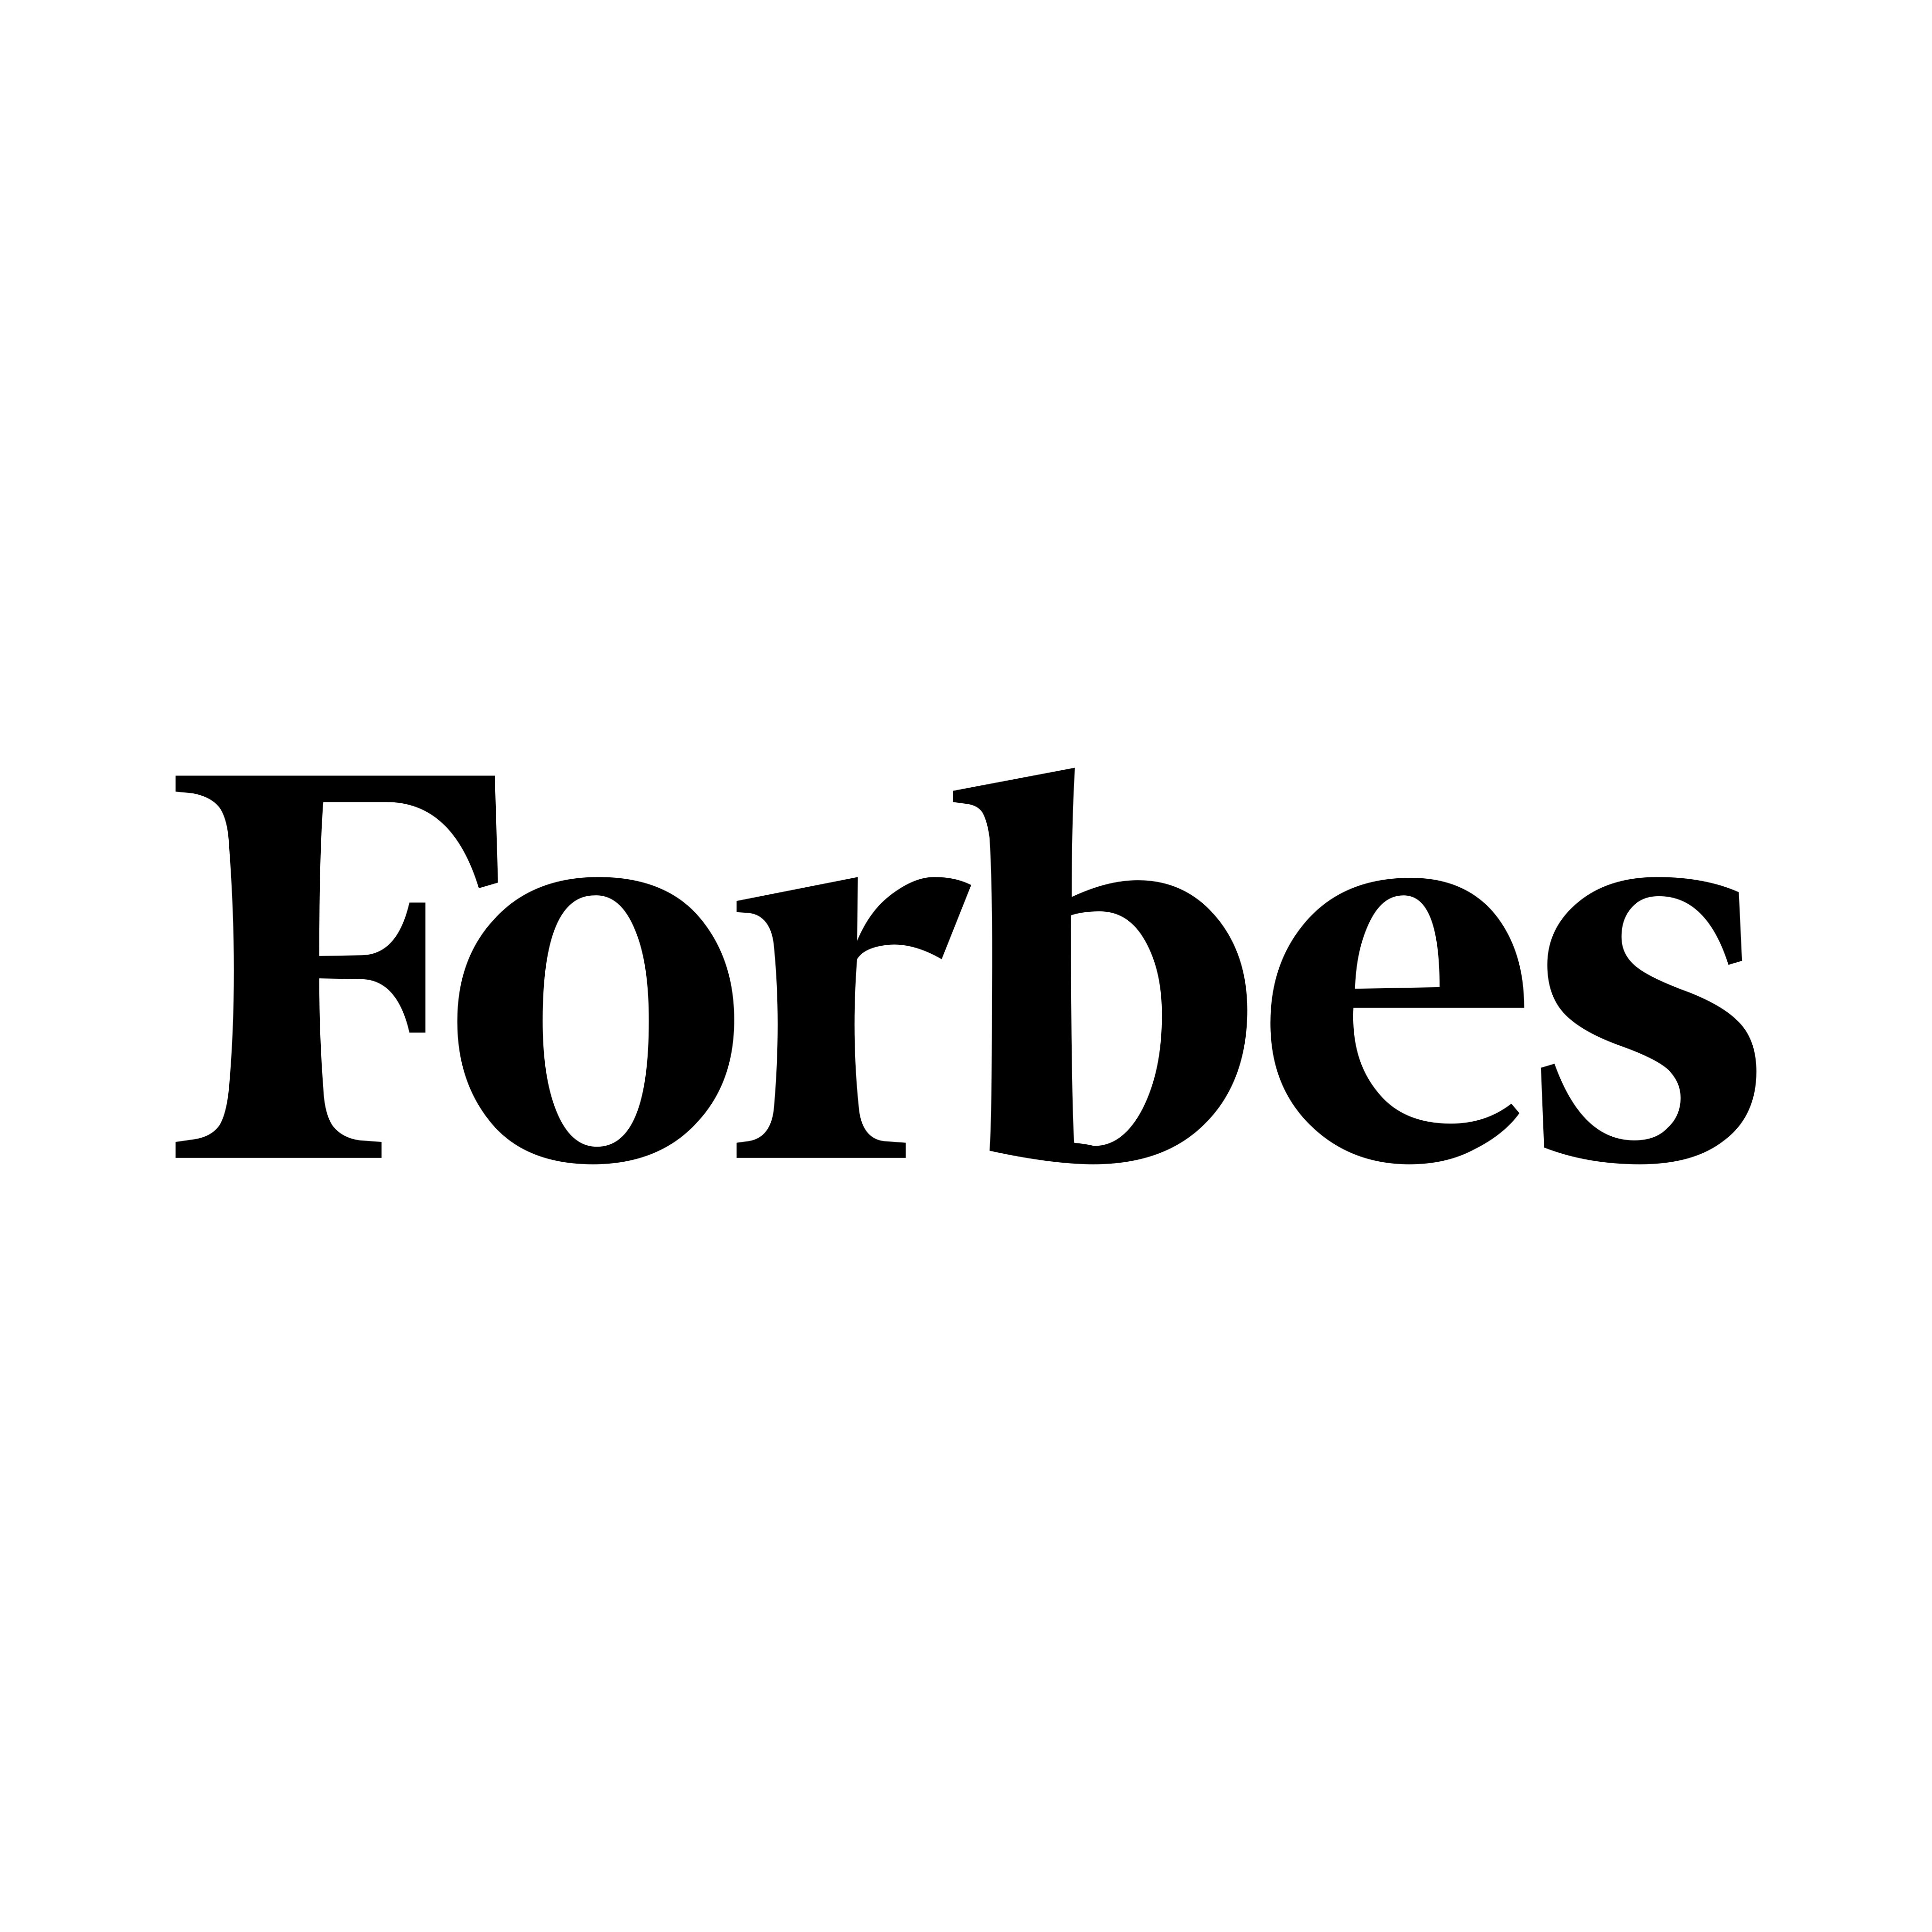 Λογότυπο Forbes - PNG και Vector - Λήψη λογότυπου